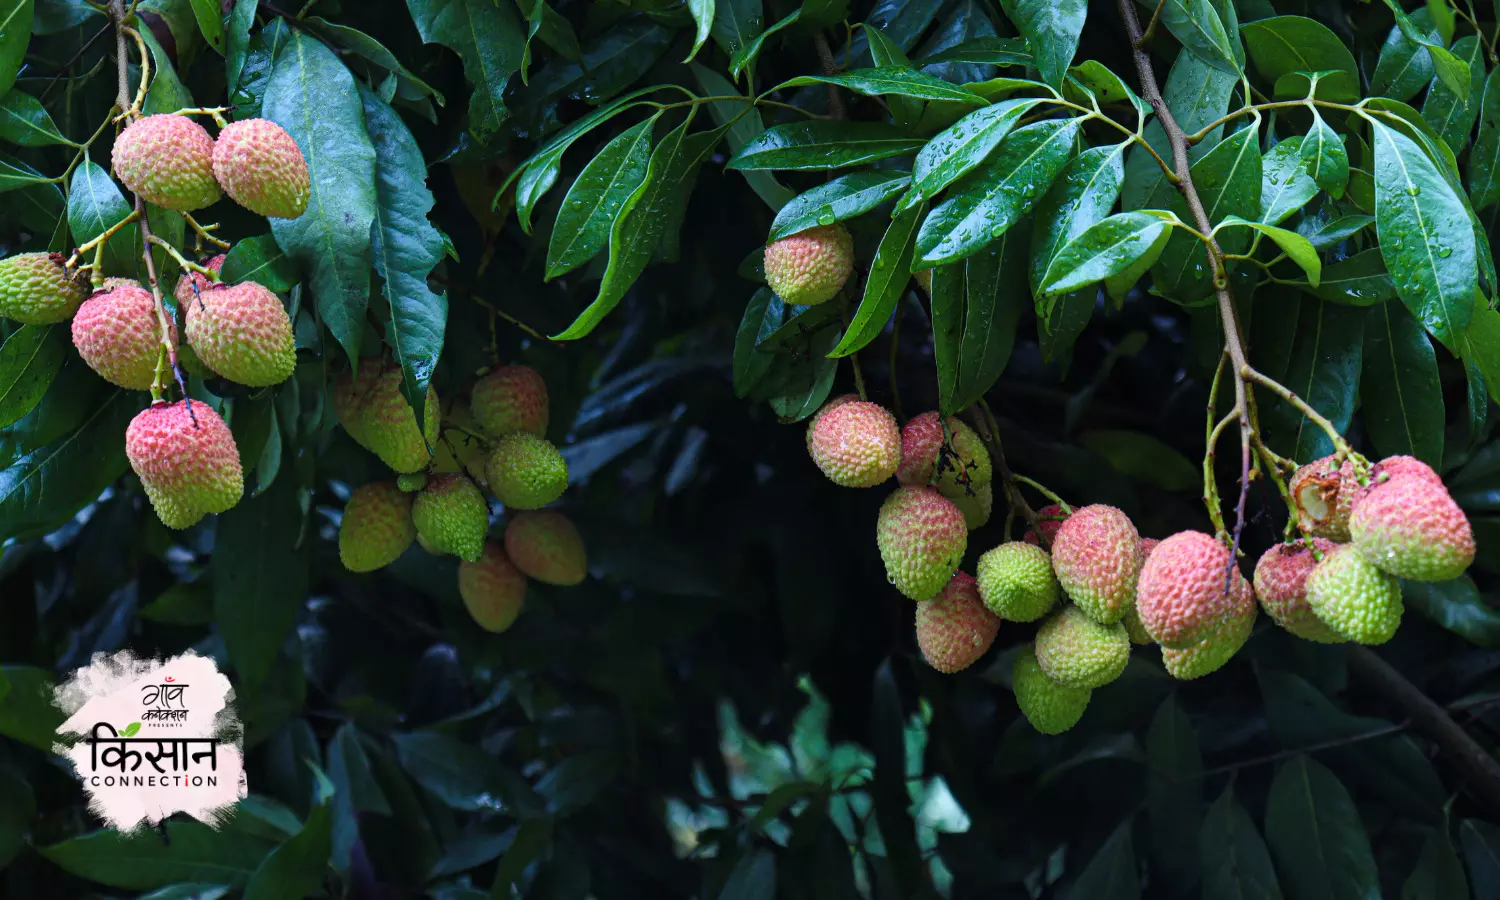 लीची में लौंग अवस्था में किया गया प्रबंधन बढ़ा देगा उत्पादन और फलों की गुणवत्ता